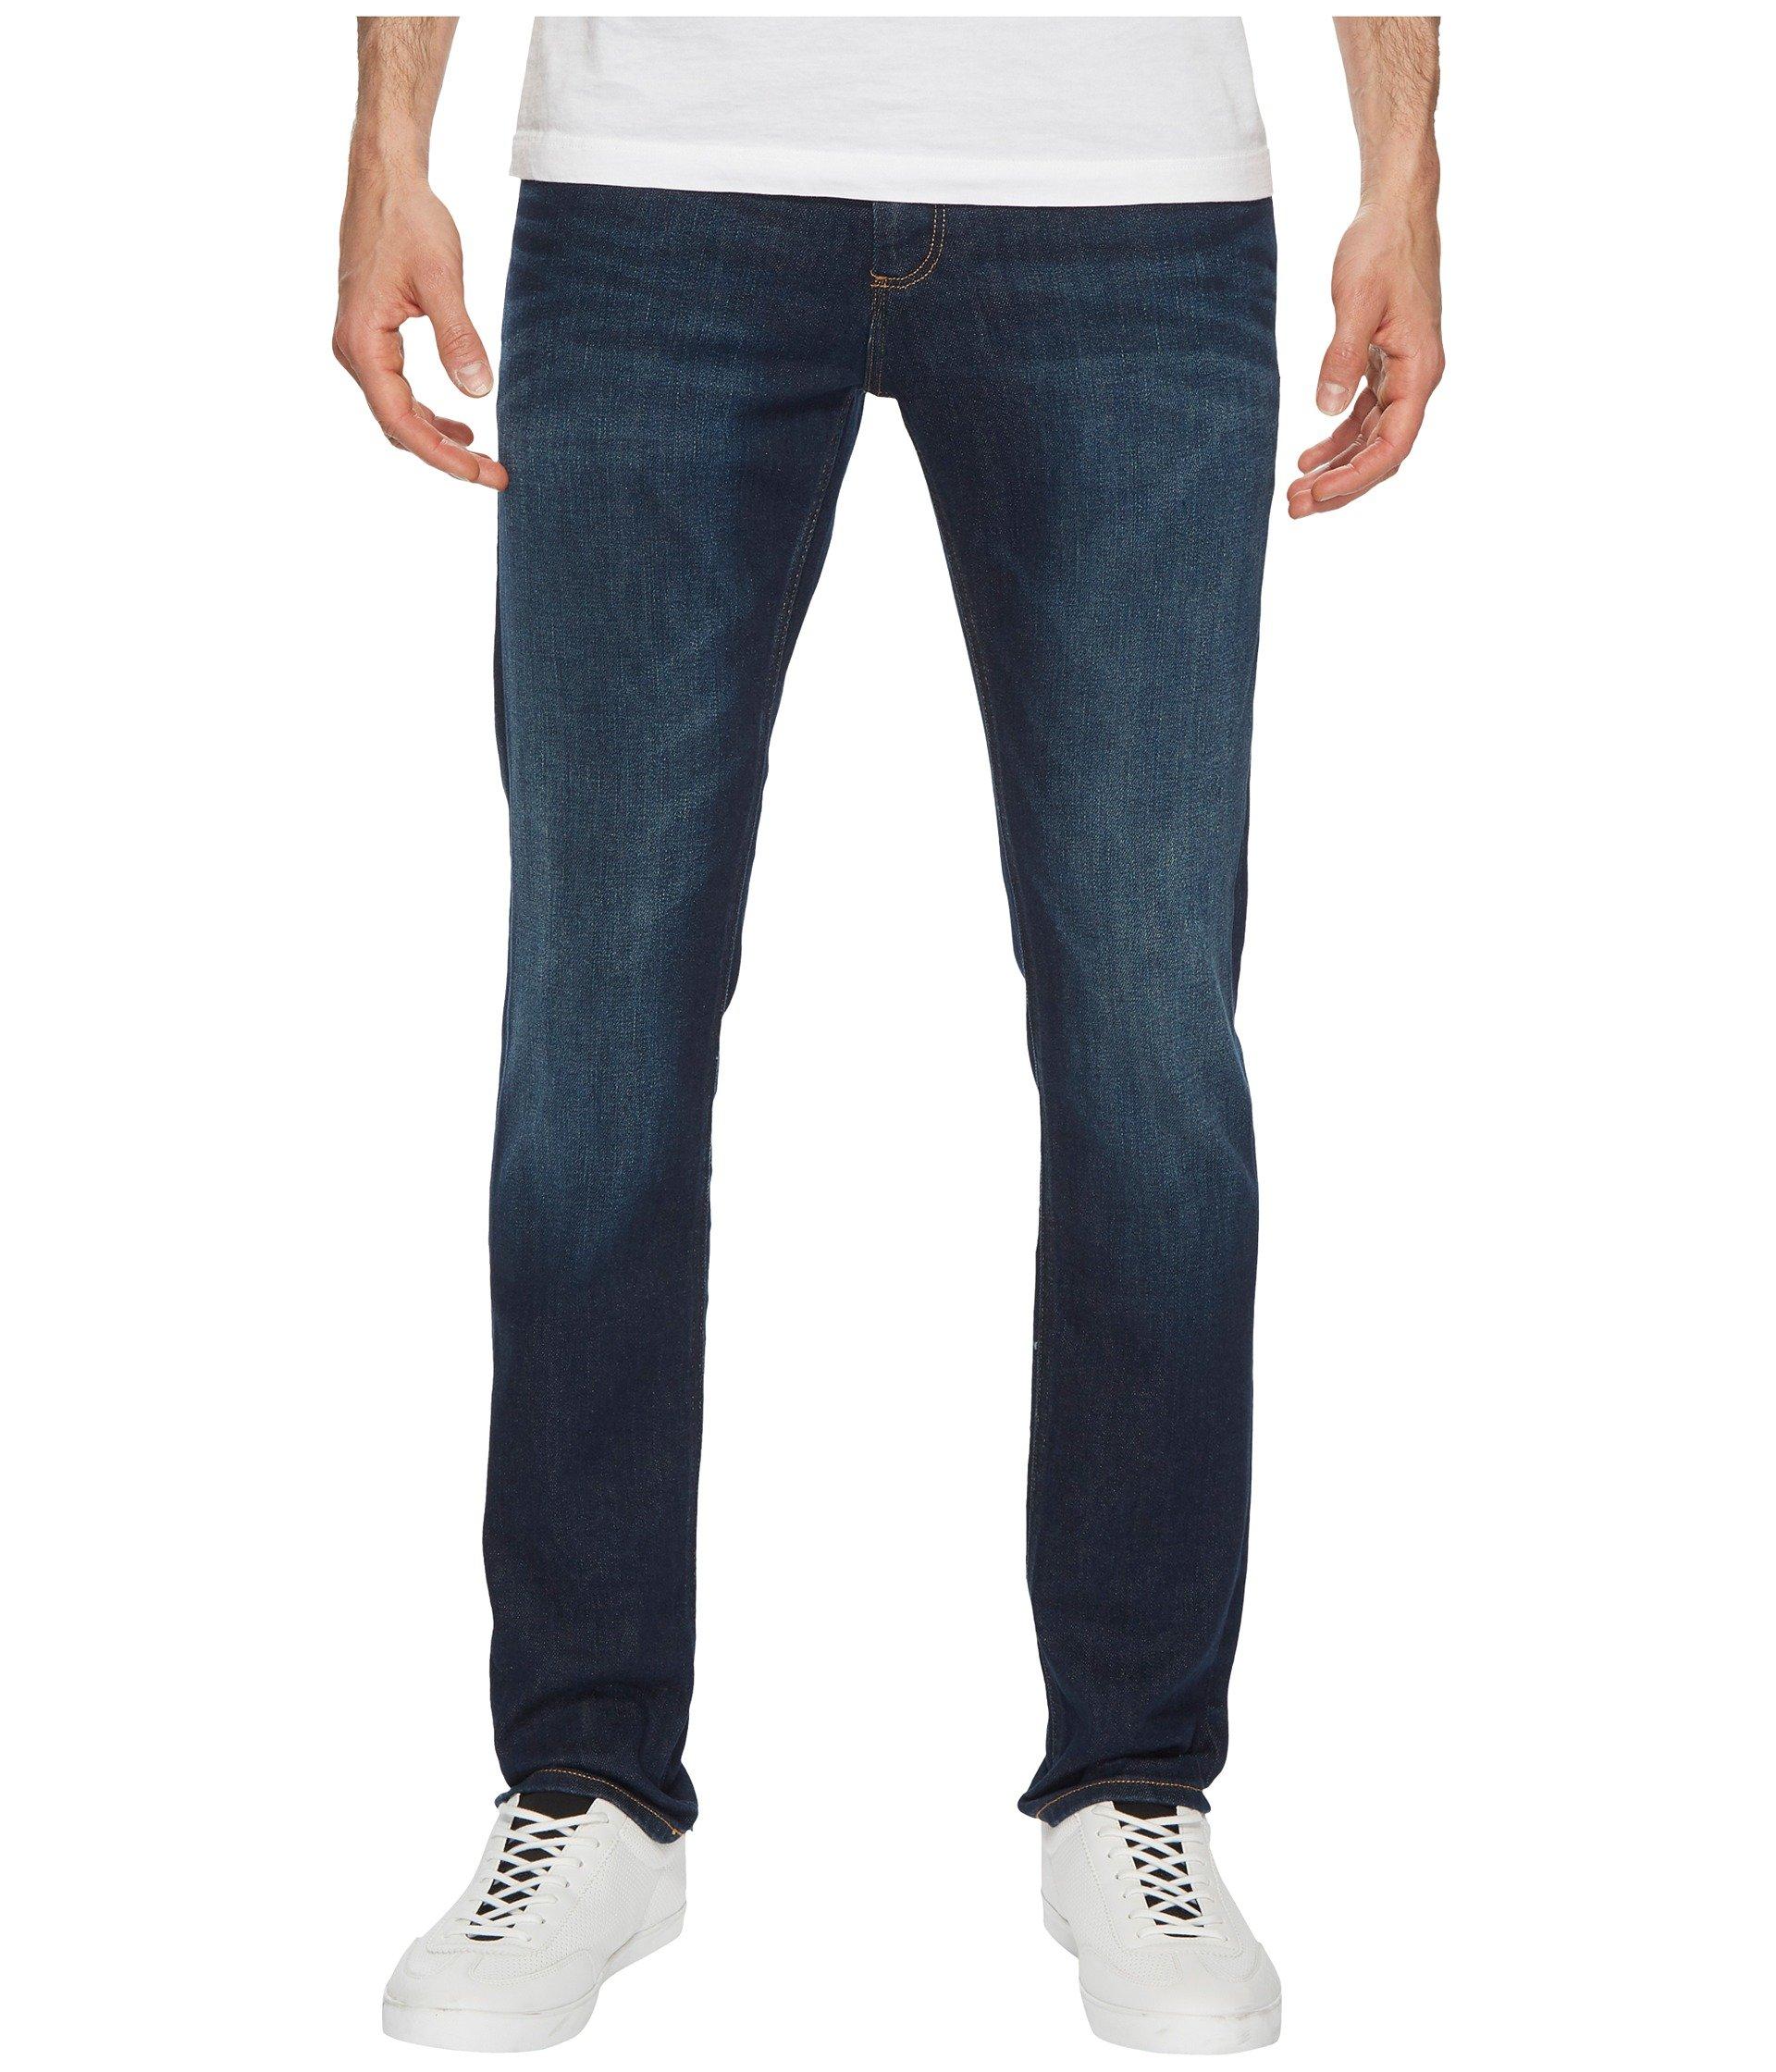 Tommy Hilfiger Slim Scanton Jeans Top Sellers, 56% OFF | ilikepinga.com